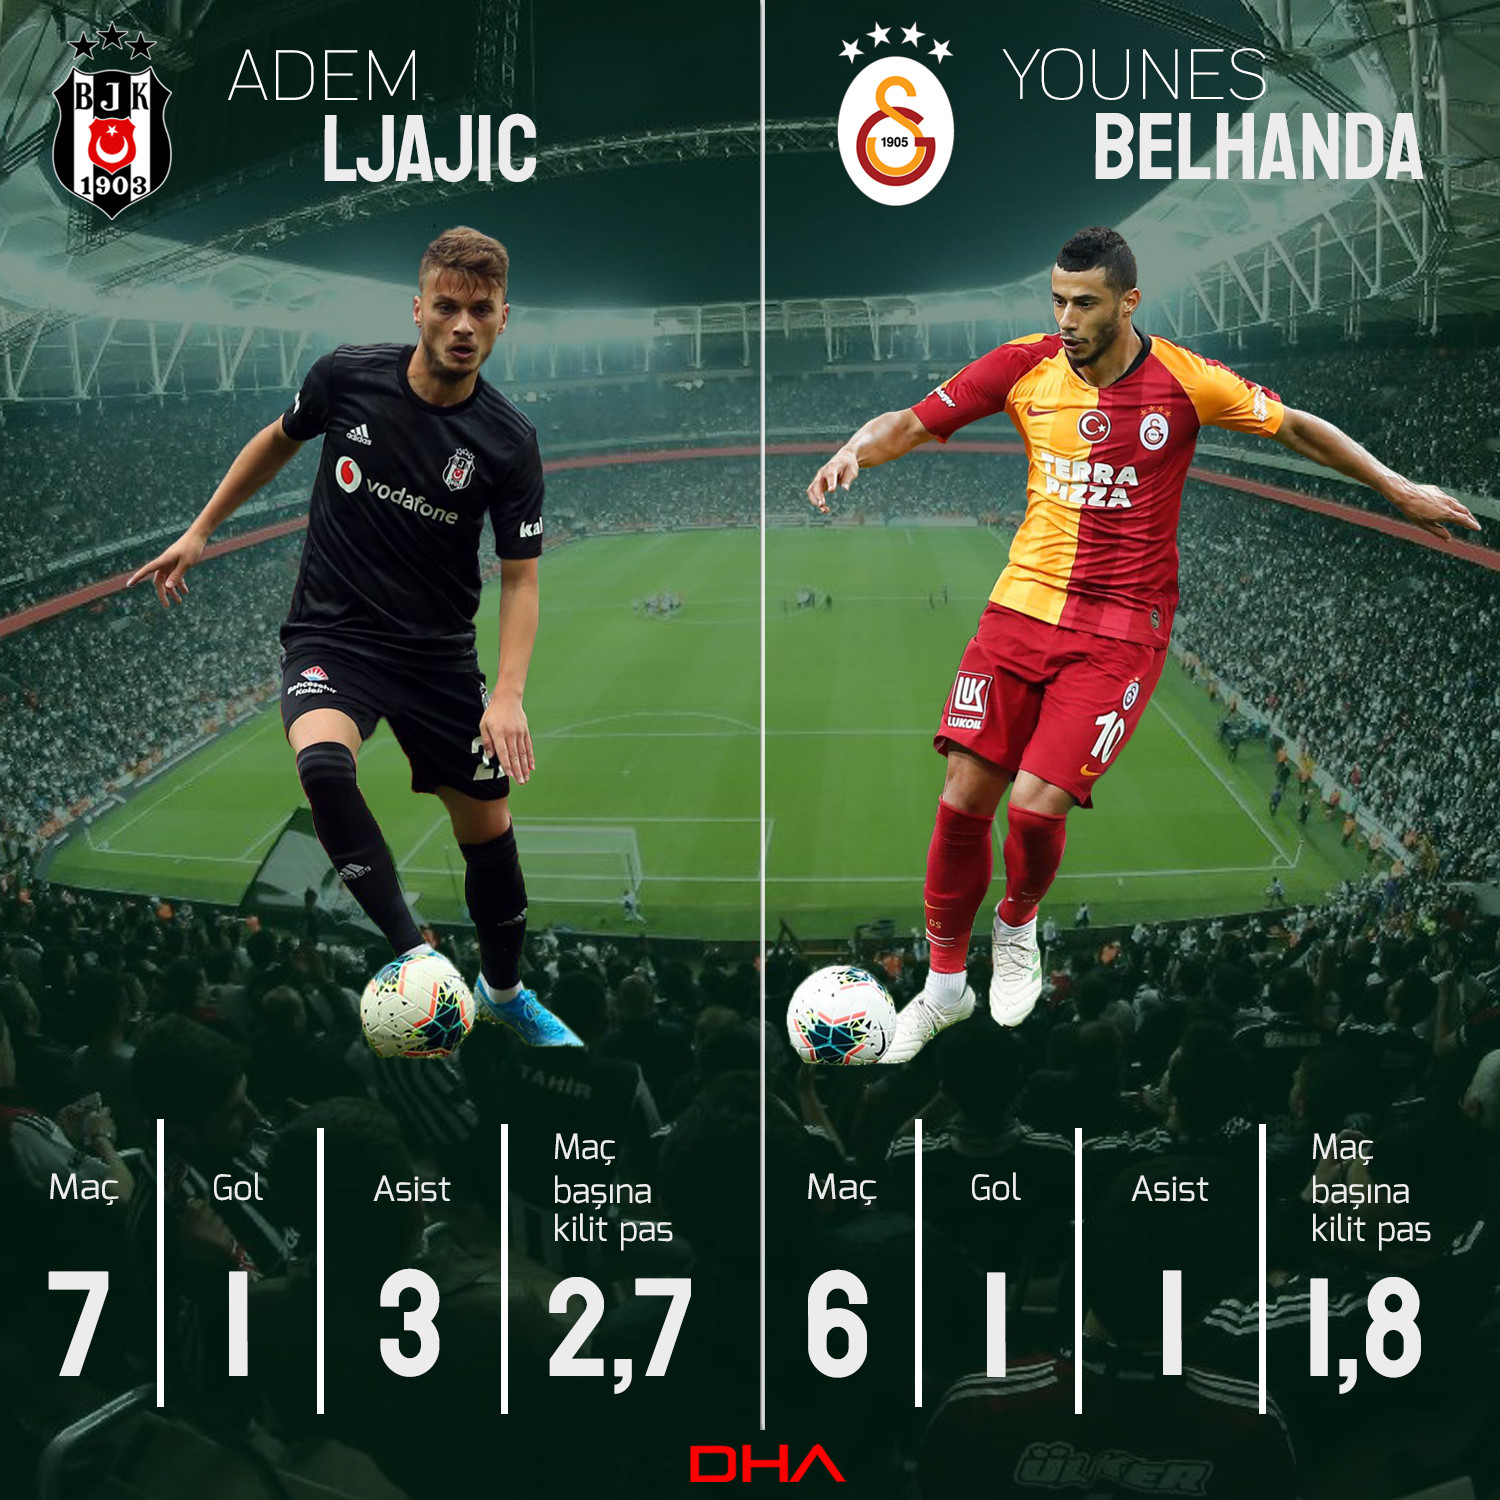 Ljajic ile Belhanda'nın bu sezonki istatistikleri